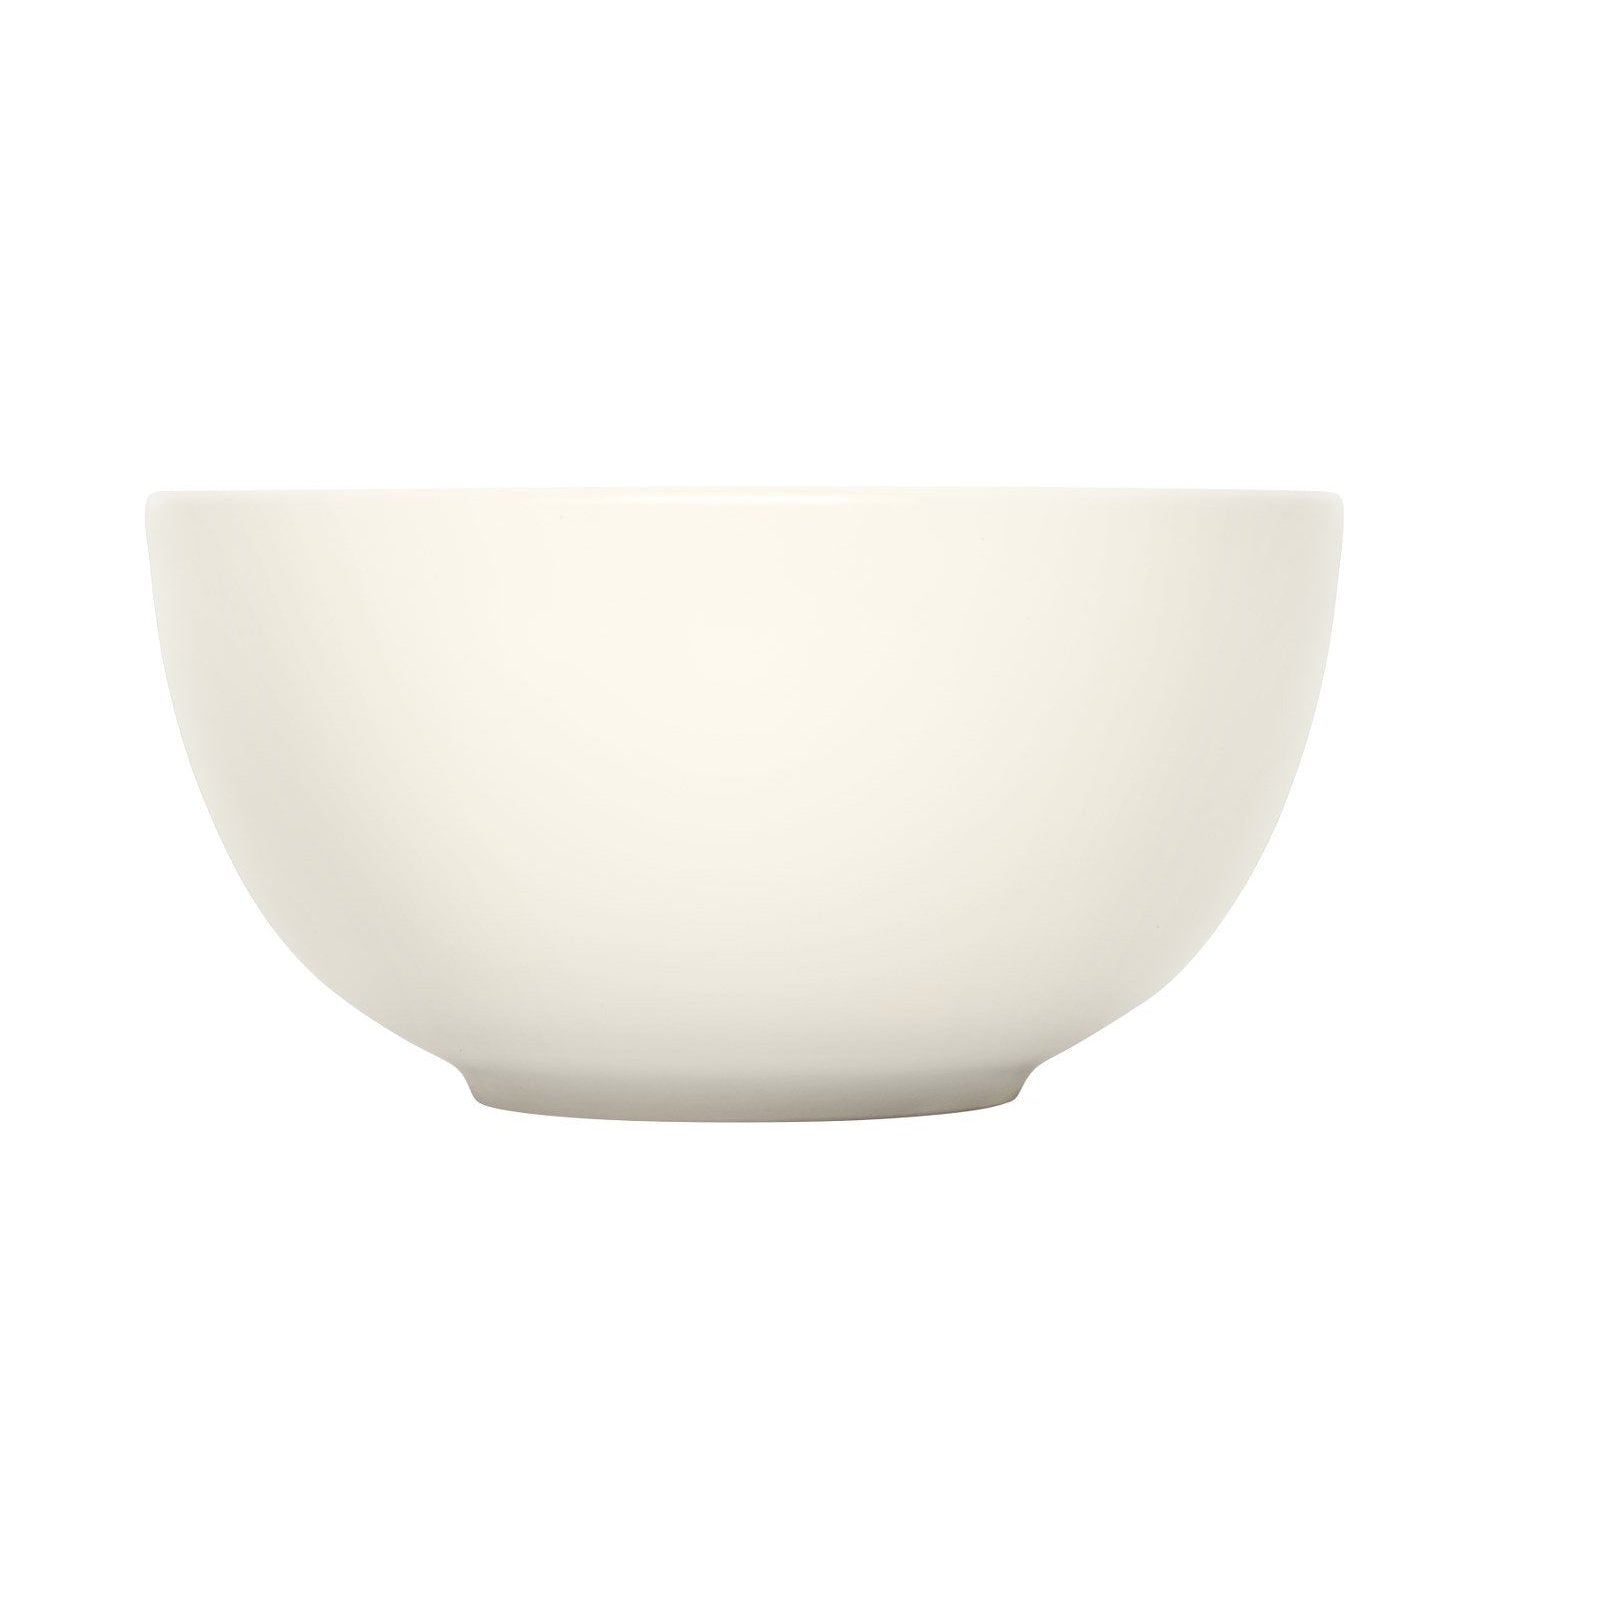 Iittala Bowl teema blanc, 1,65 L